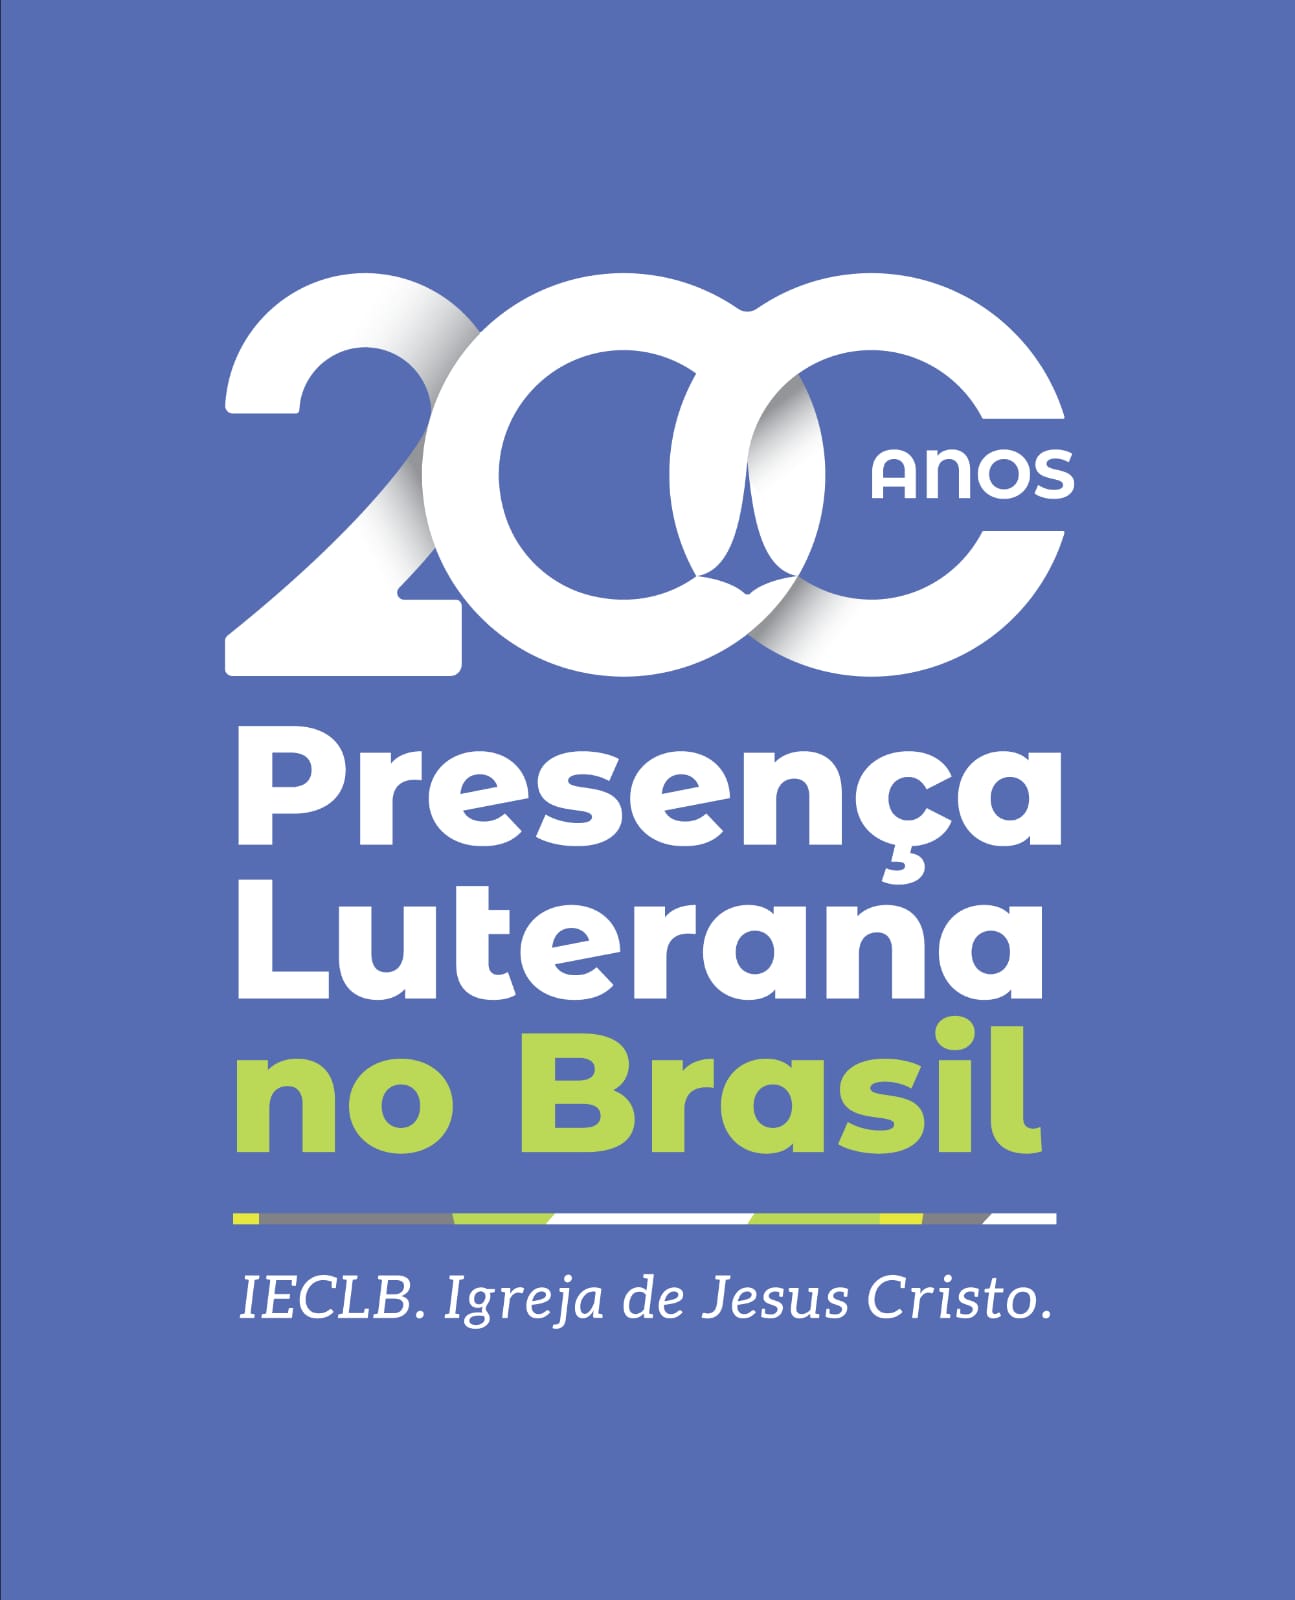 200 anos da Presença Luterana no Brasil